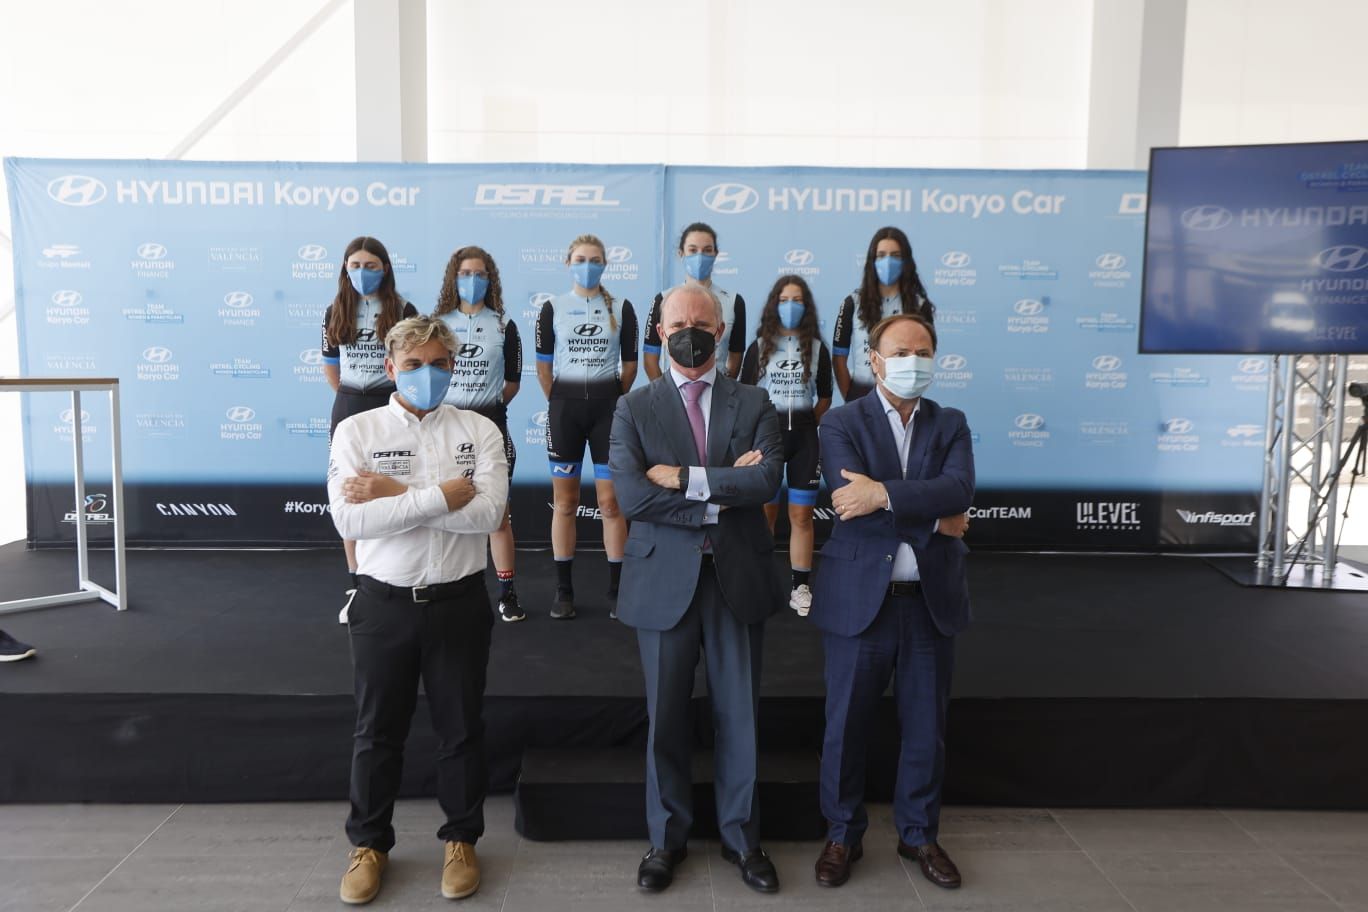 Presentación del equipo ciclista Hyundai Koryo Car